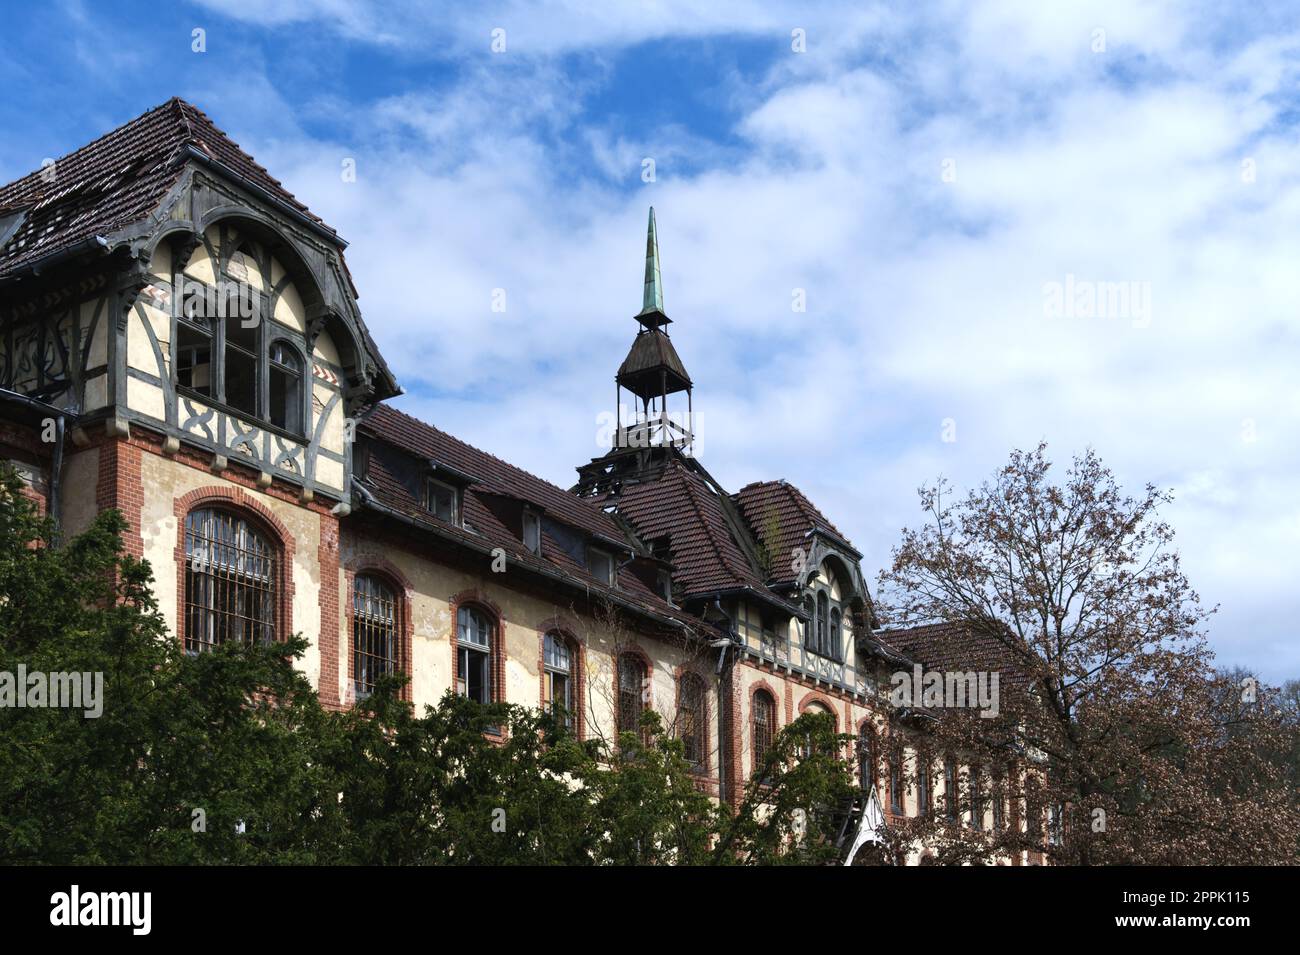 Abandonné bâtiment historique en Allemagne hôpital horreur scène créepy emplacement Banque D'Images